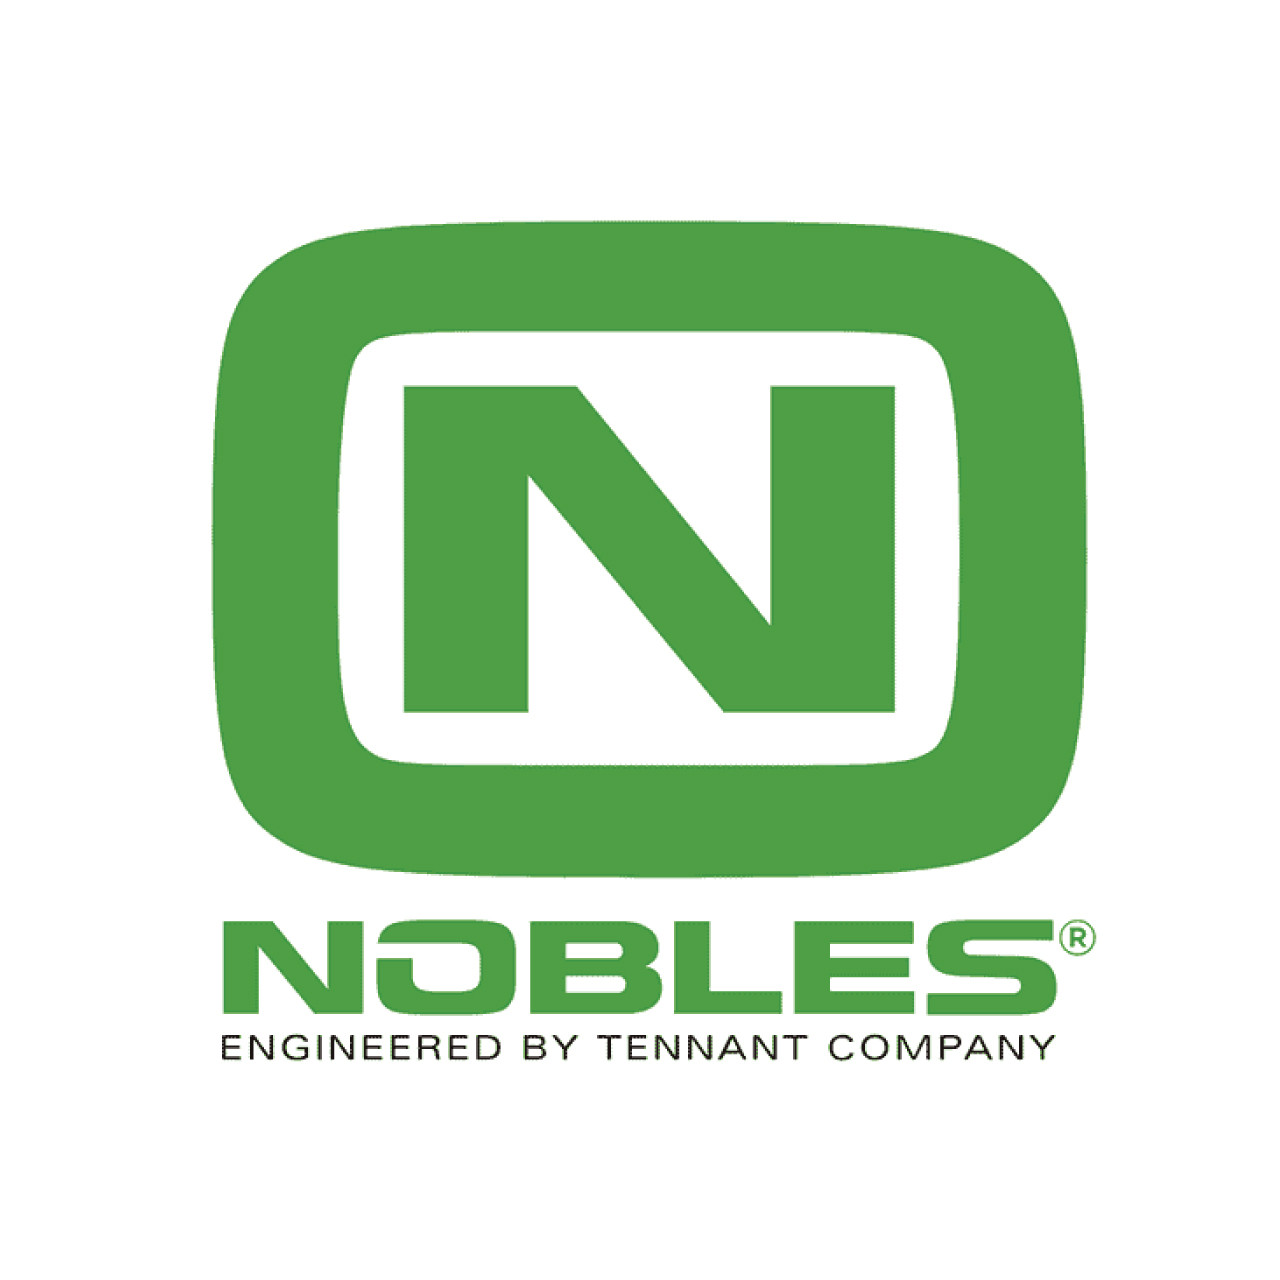 Nobles 1074865 LABEL, LOGO, 10.5L [Nobles] SBGRN pic